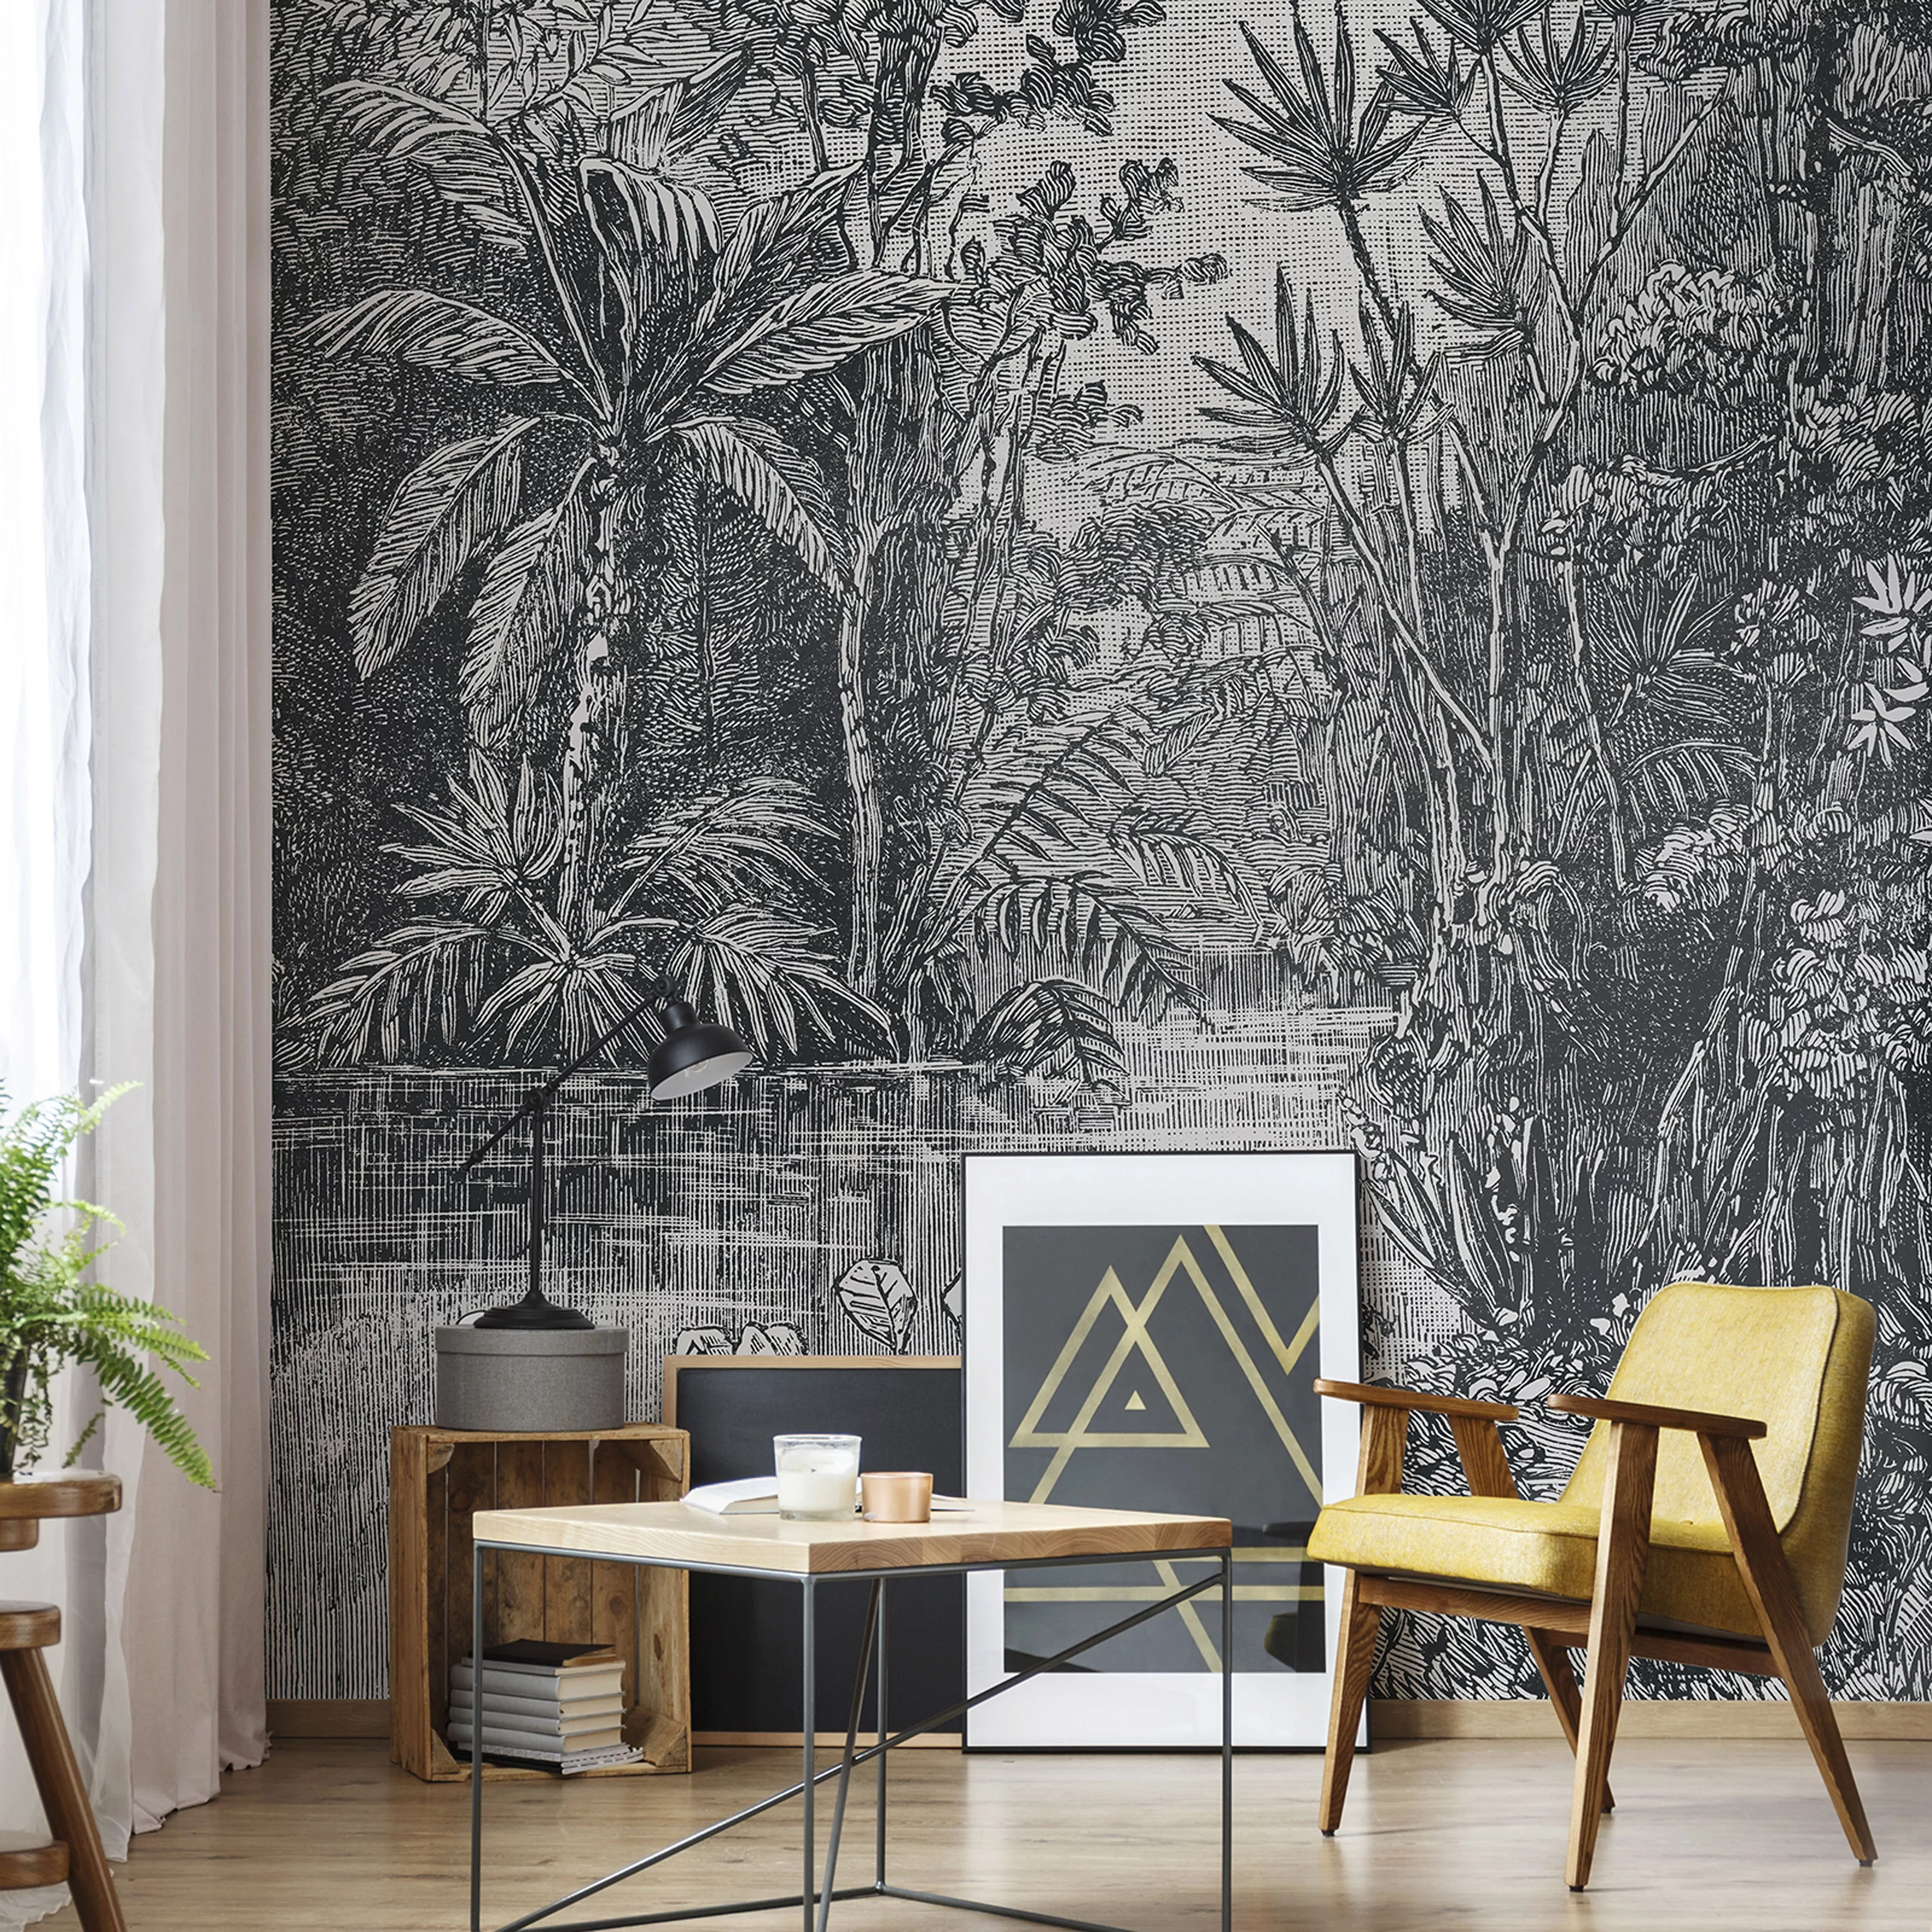 Art for the Home Fototapete Jungle zwart - wit 280 x 200 cm günstig online kaufen